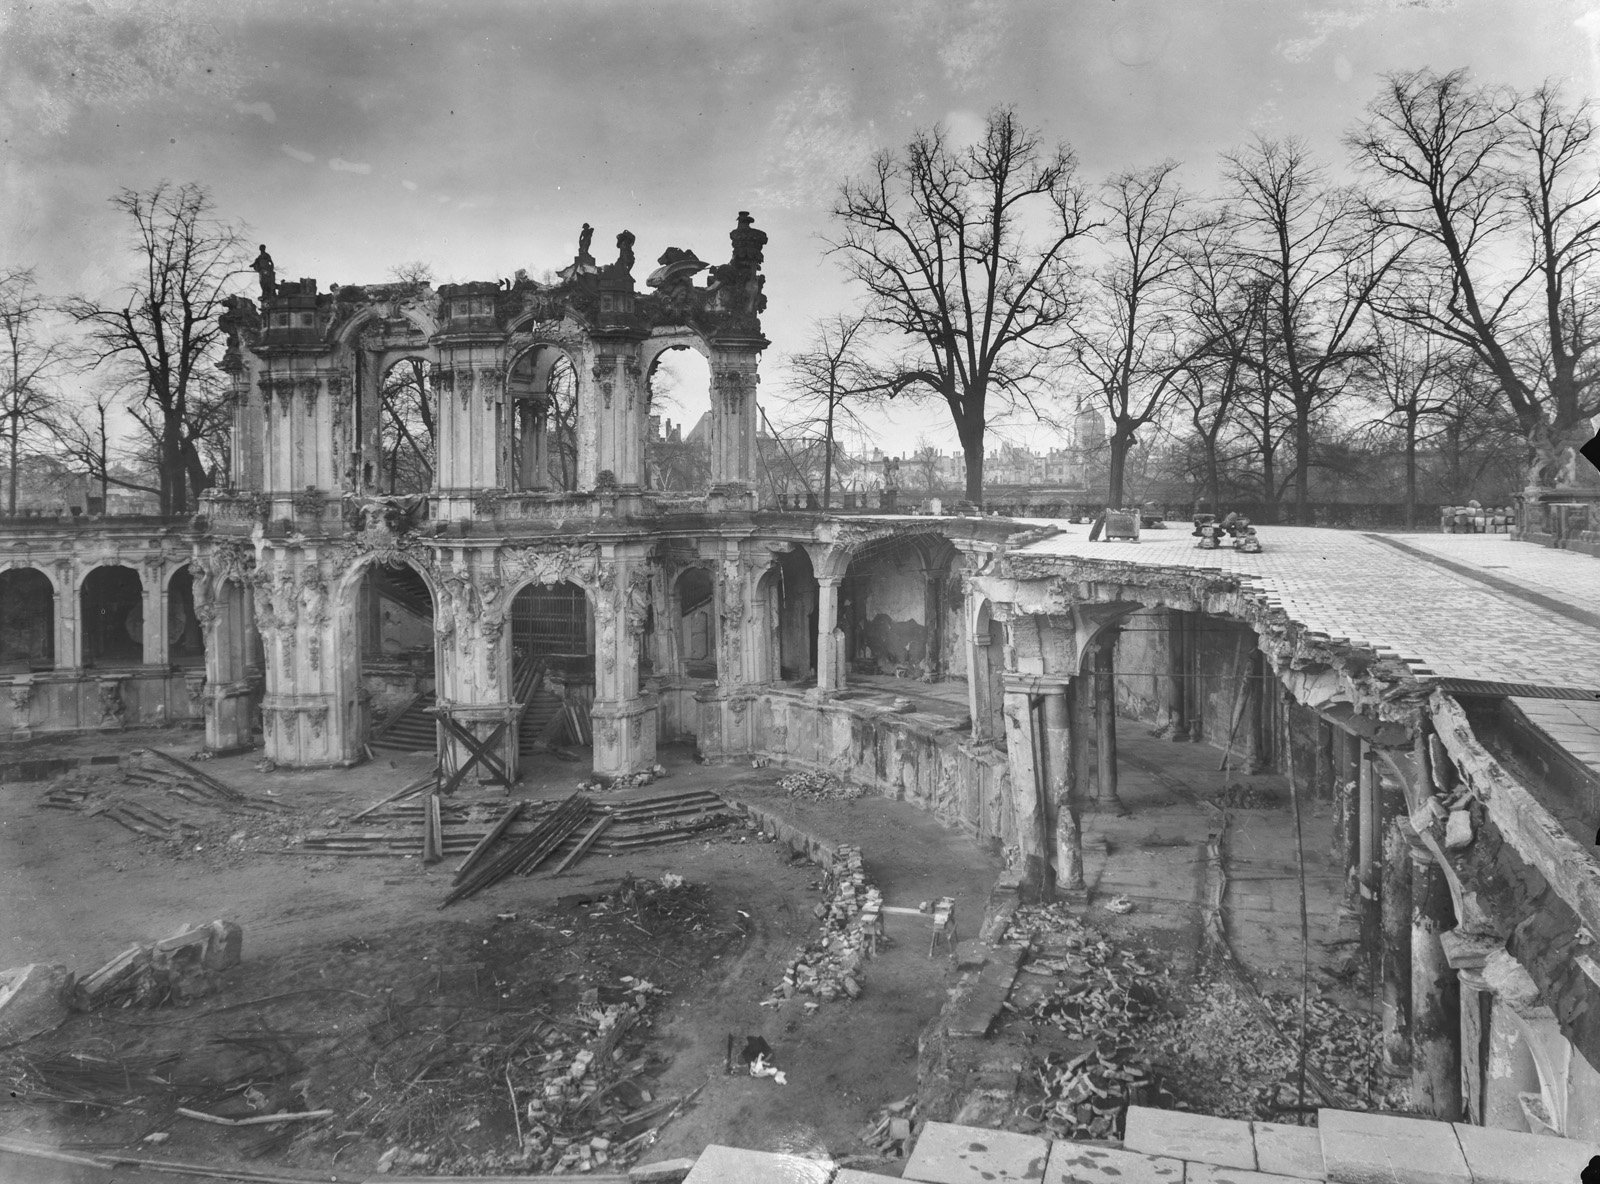 Foto des zerstörten Wallpavillons des Dresdner Zwingers nach dem Zweiten Weltkrieg